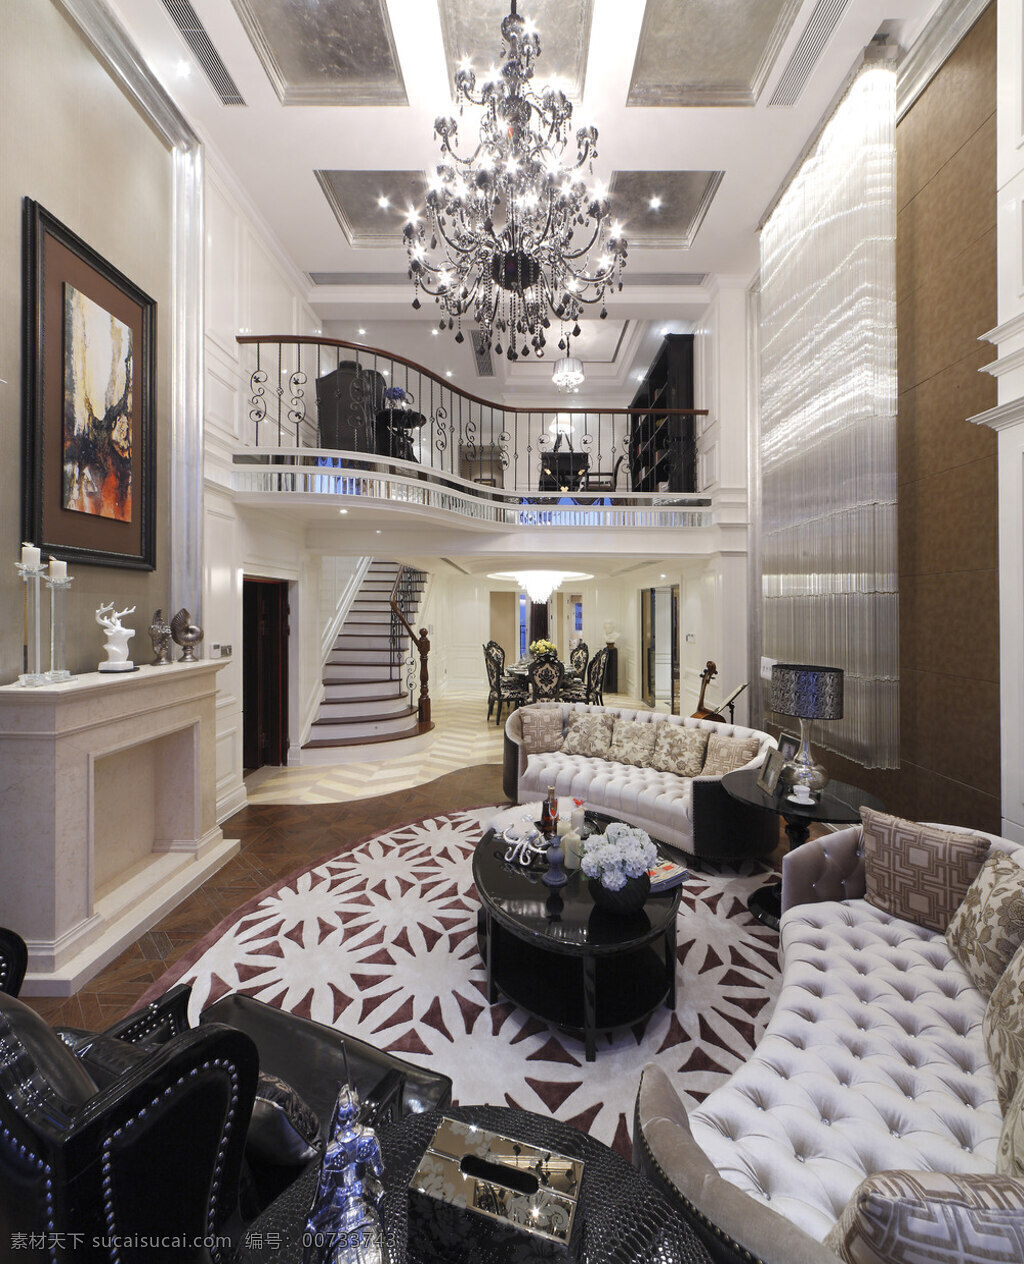 别墅 二层 楼梯 走廊 效果图 室内设计 家装效果图 家居 家具 家装 吊灯 沙发 茶几 地毯